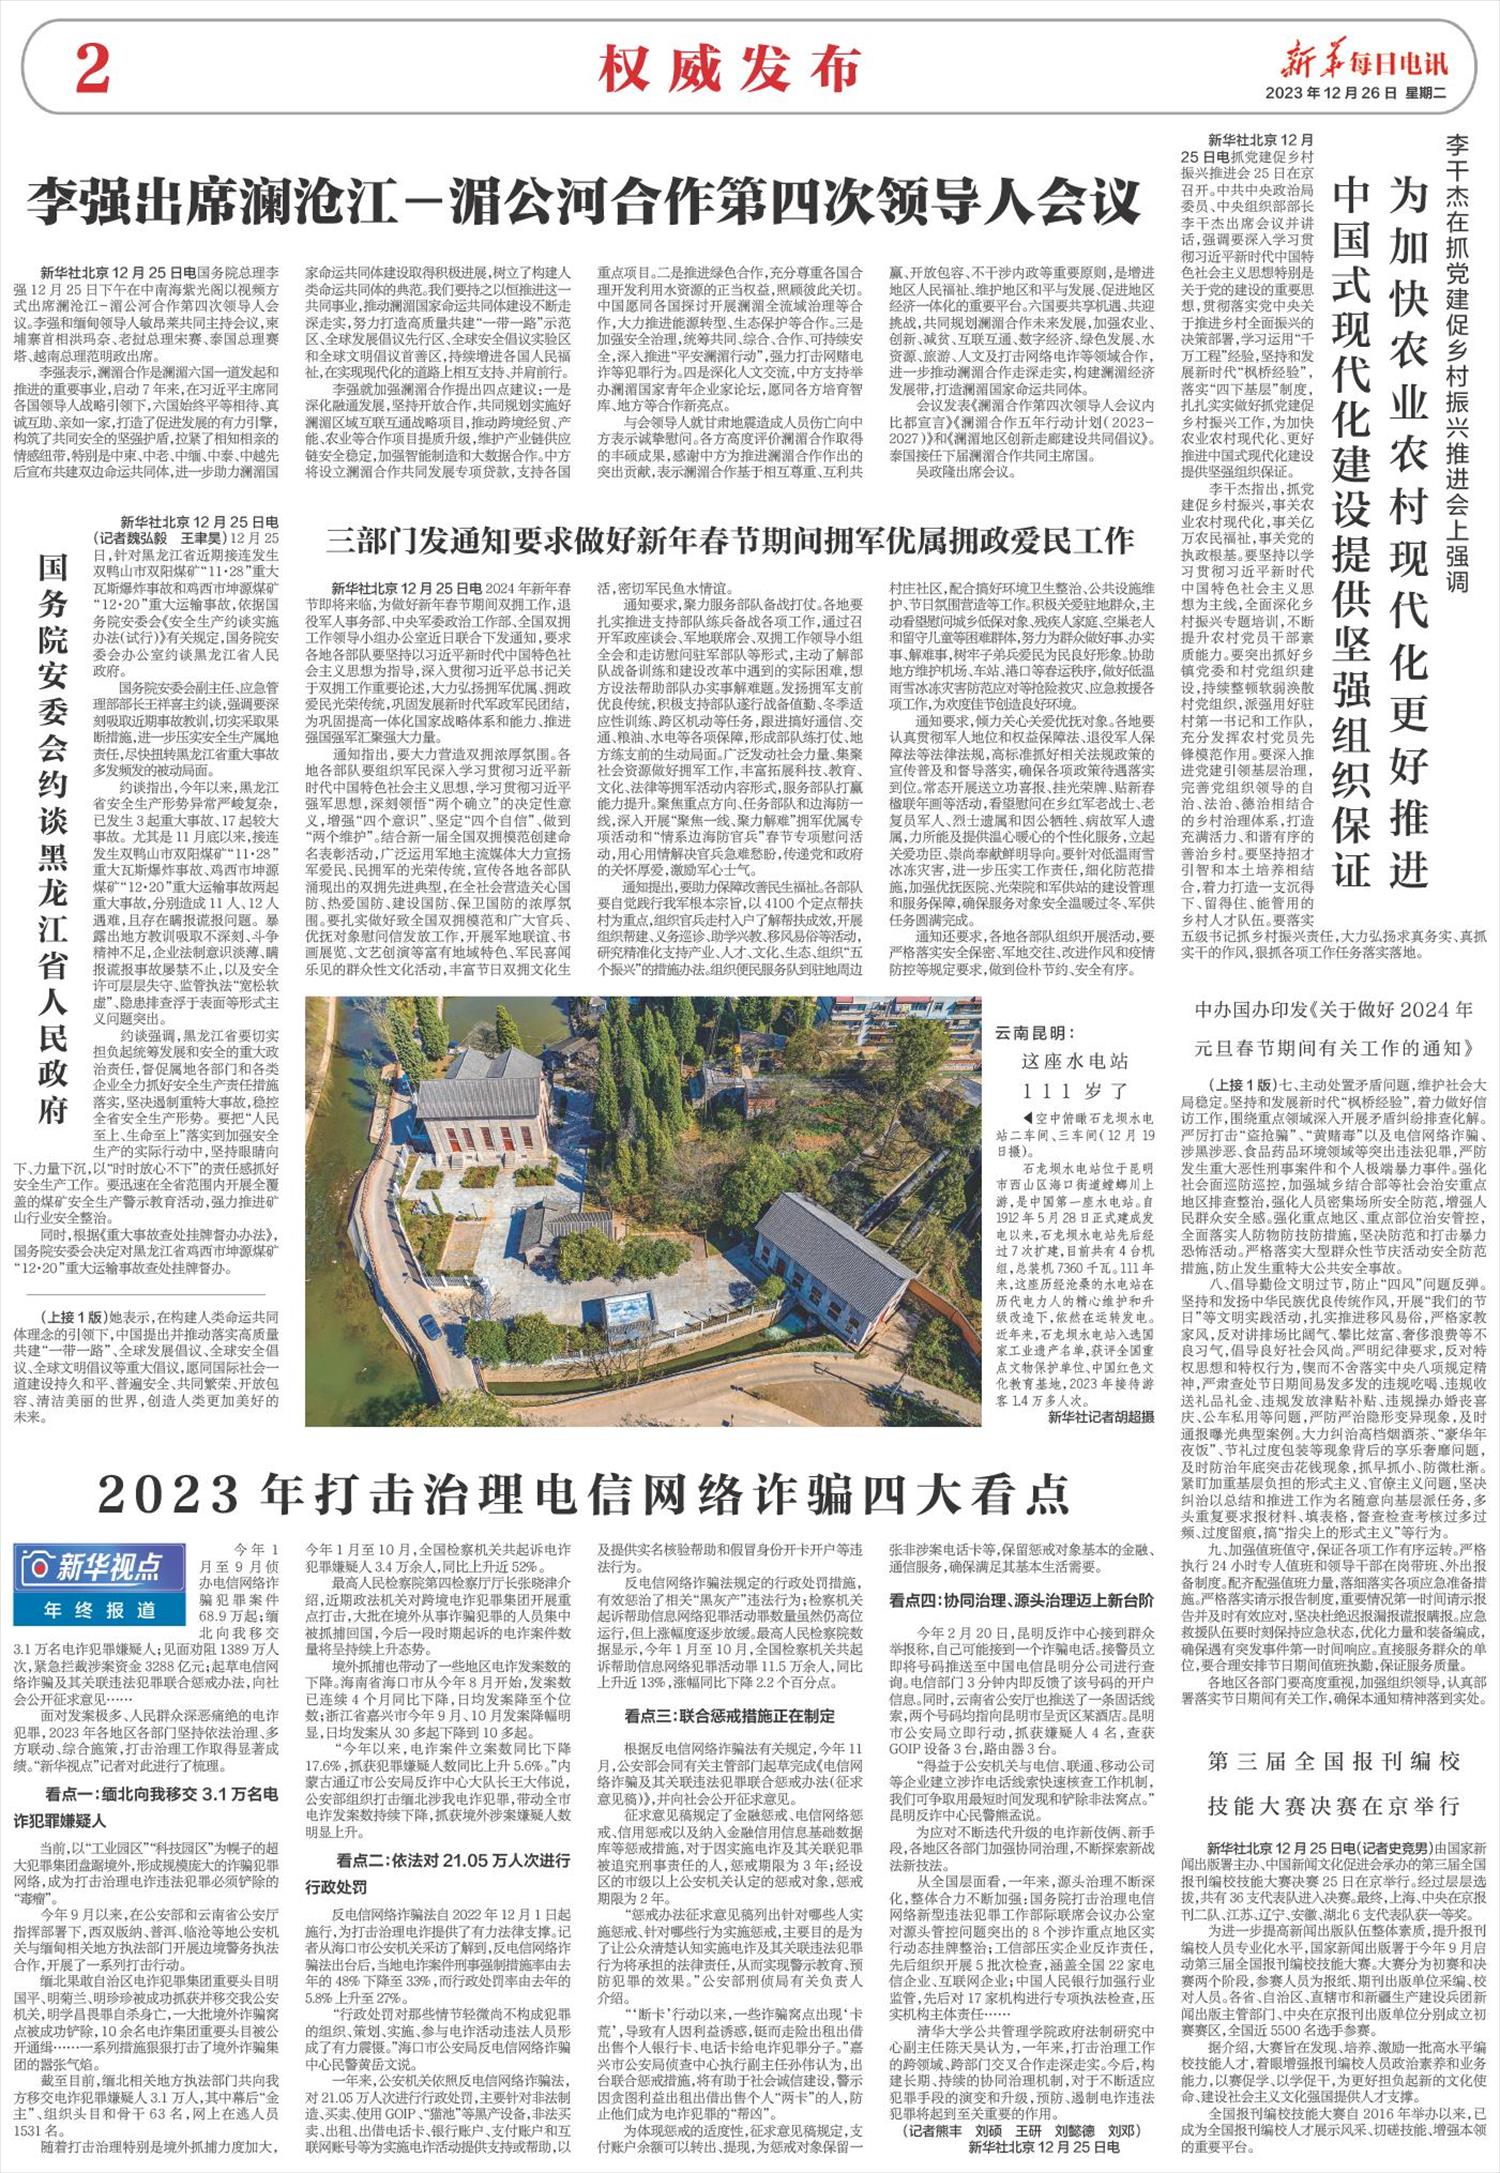 新华每日电讯-微报纸-2023年12月26日